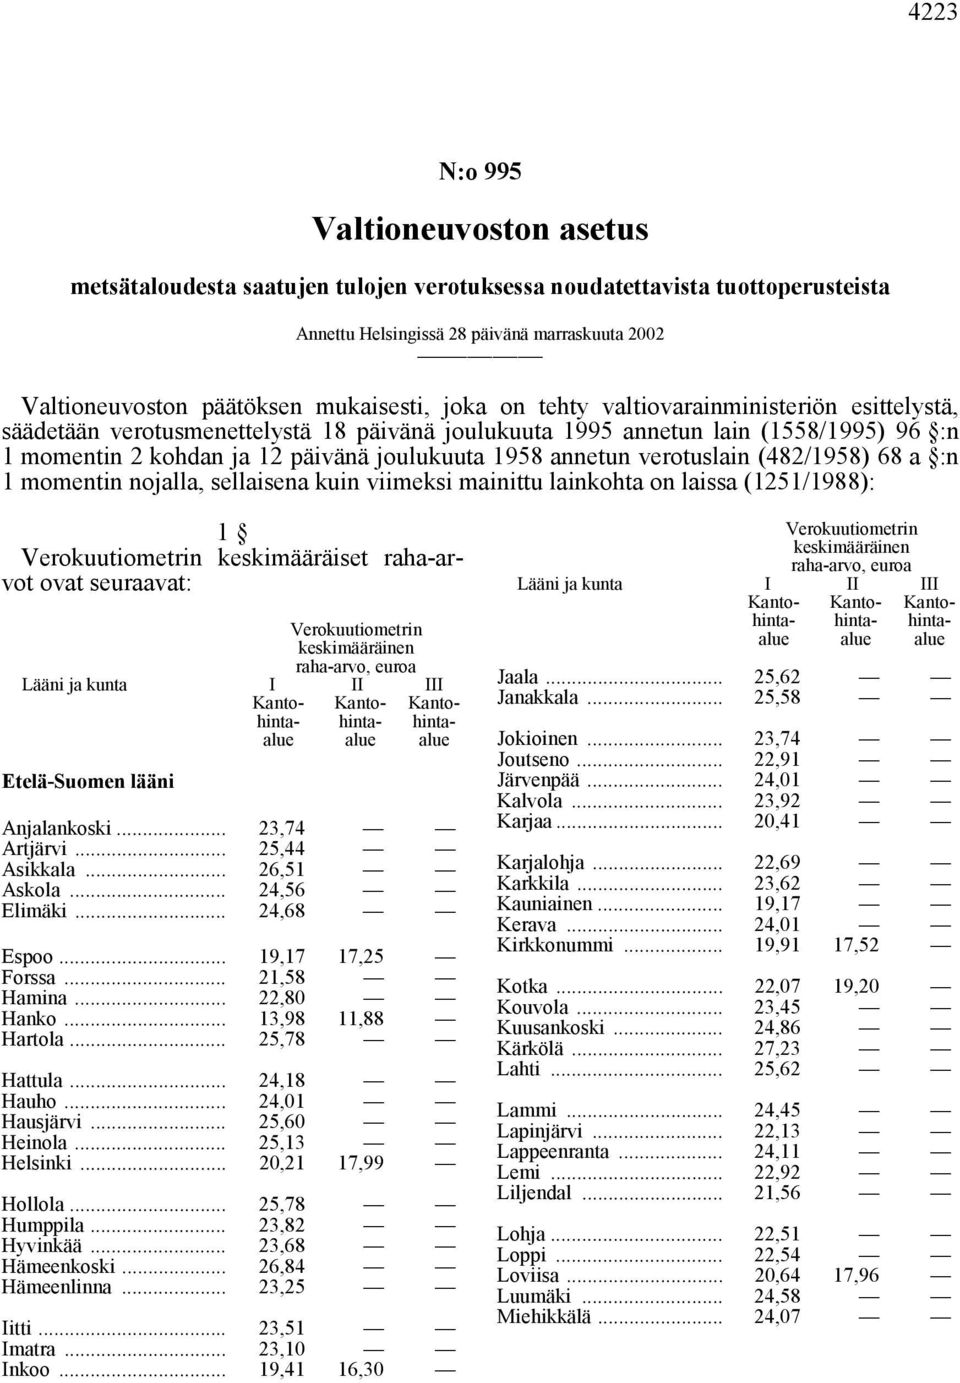 1958 annetun verotuslain (482/1958) 68 a :n 1 momentin nojalla, sellaisena kuin viimeksi mainittu lainkohta on laissa (1251/1988): 1 keskimääräiset raha-arvot ovat seuraavat: Etelä-Suomen lääni